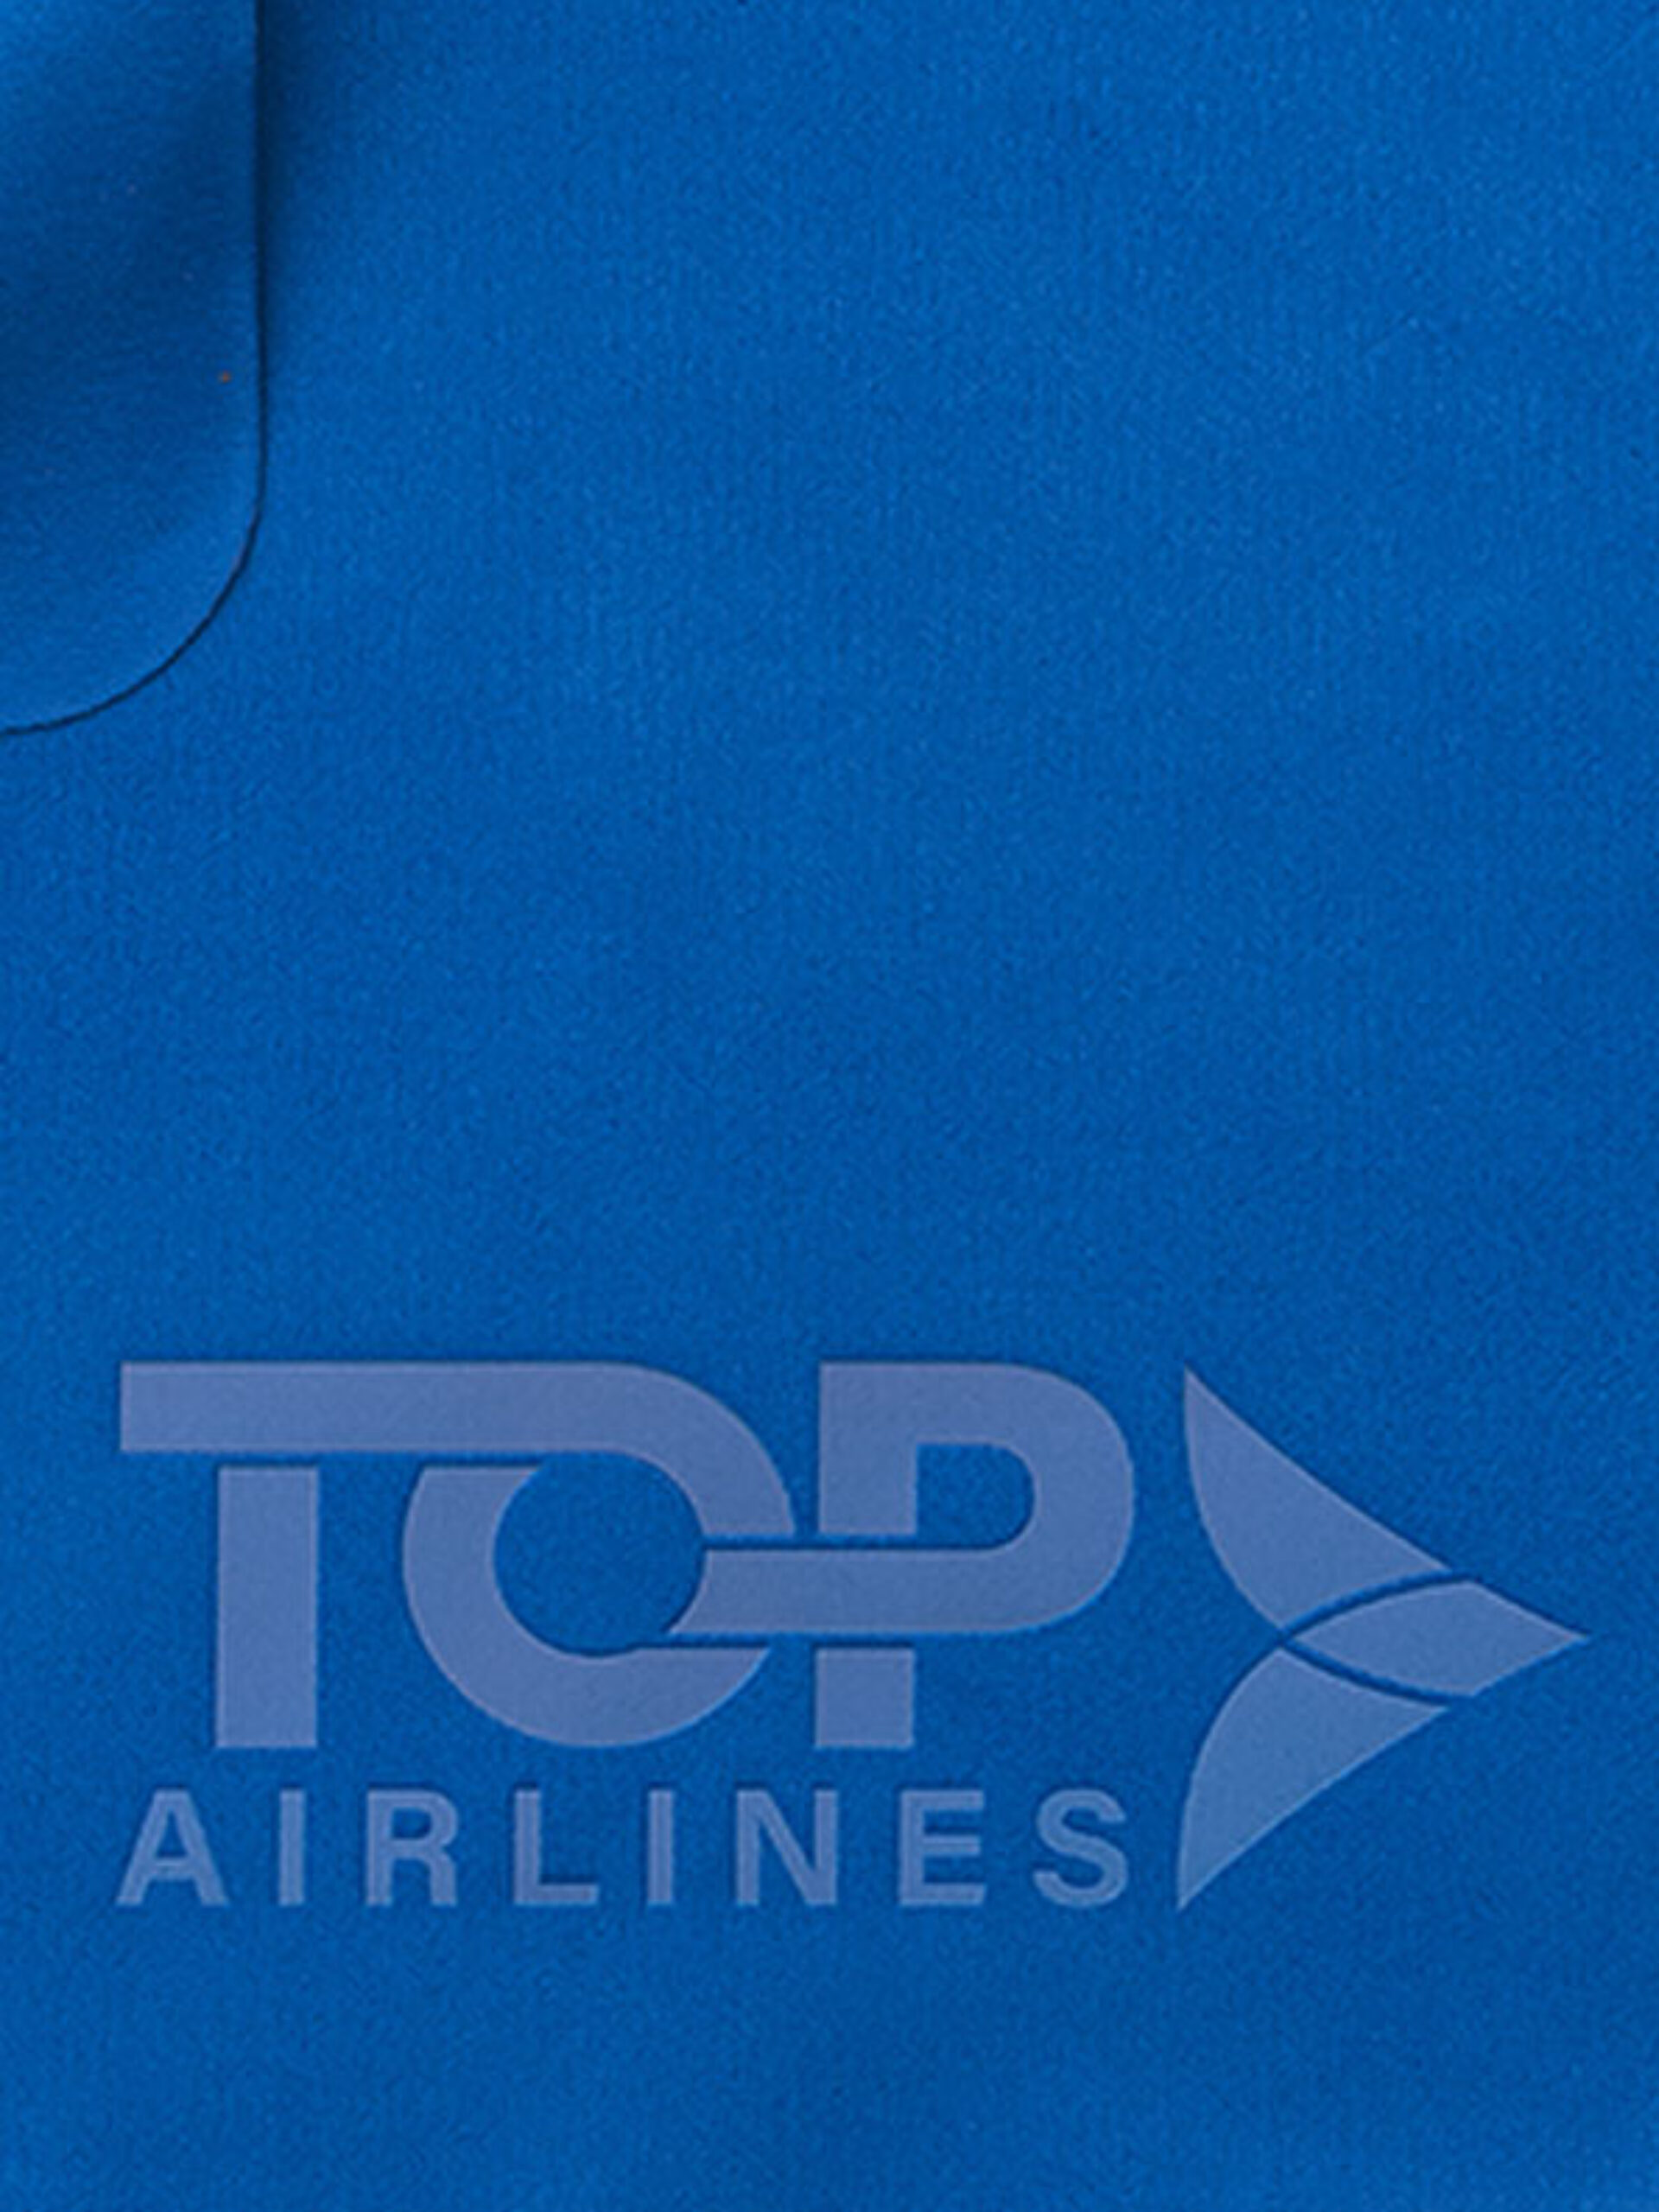 Mikrofaser Putztuch Eu Top Airlines Mit Logo Bedrucken Blau Praegung